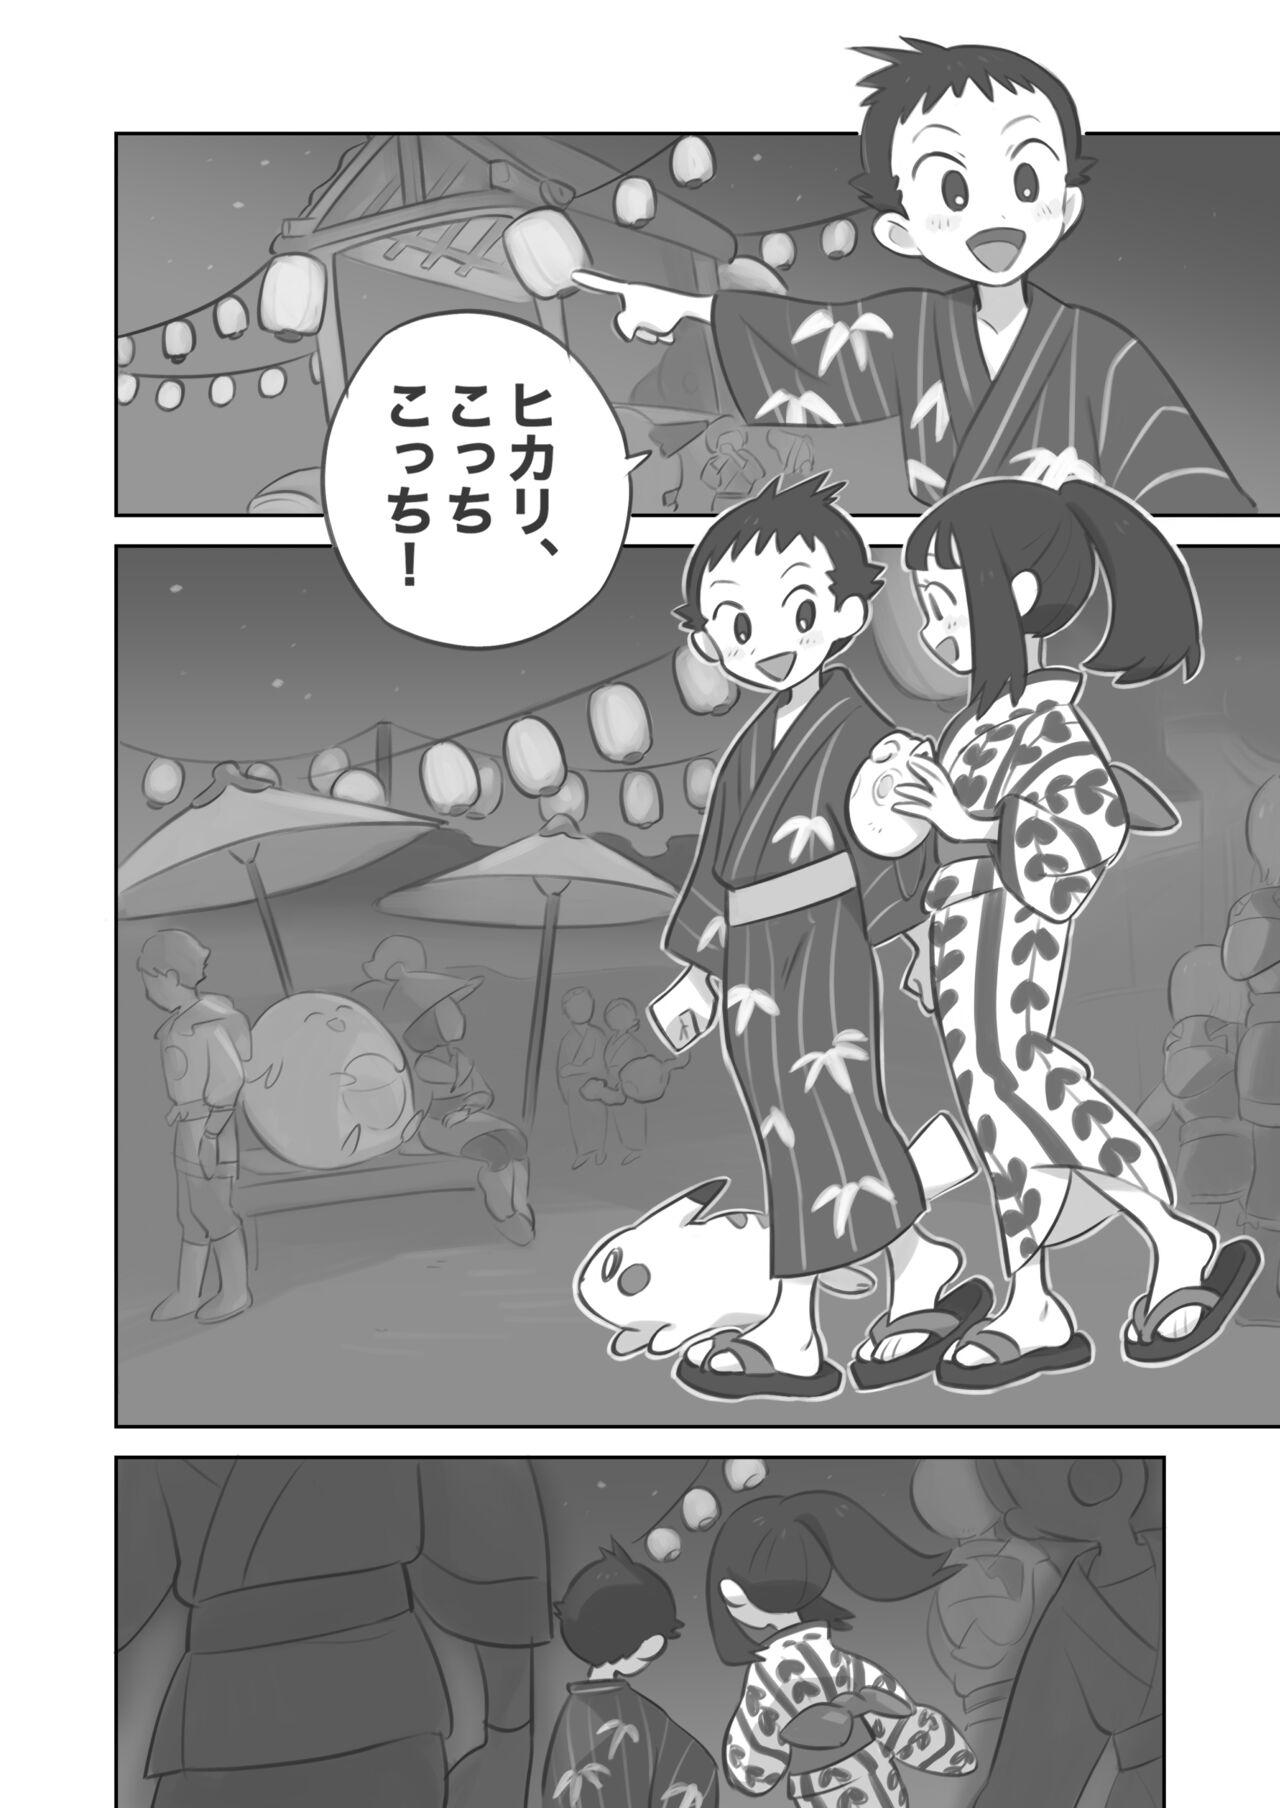 Cornudo Futanari shujinkō-chan ga Teru senpai o horu manga 2 - Pokemon | pocket monsters Bokep - Page 2